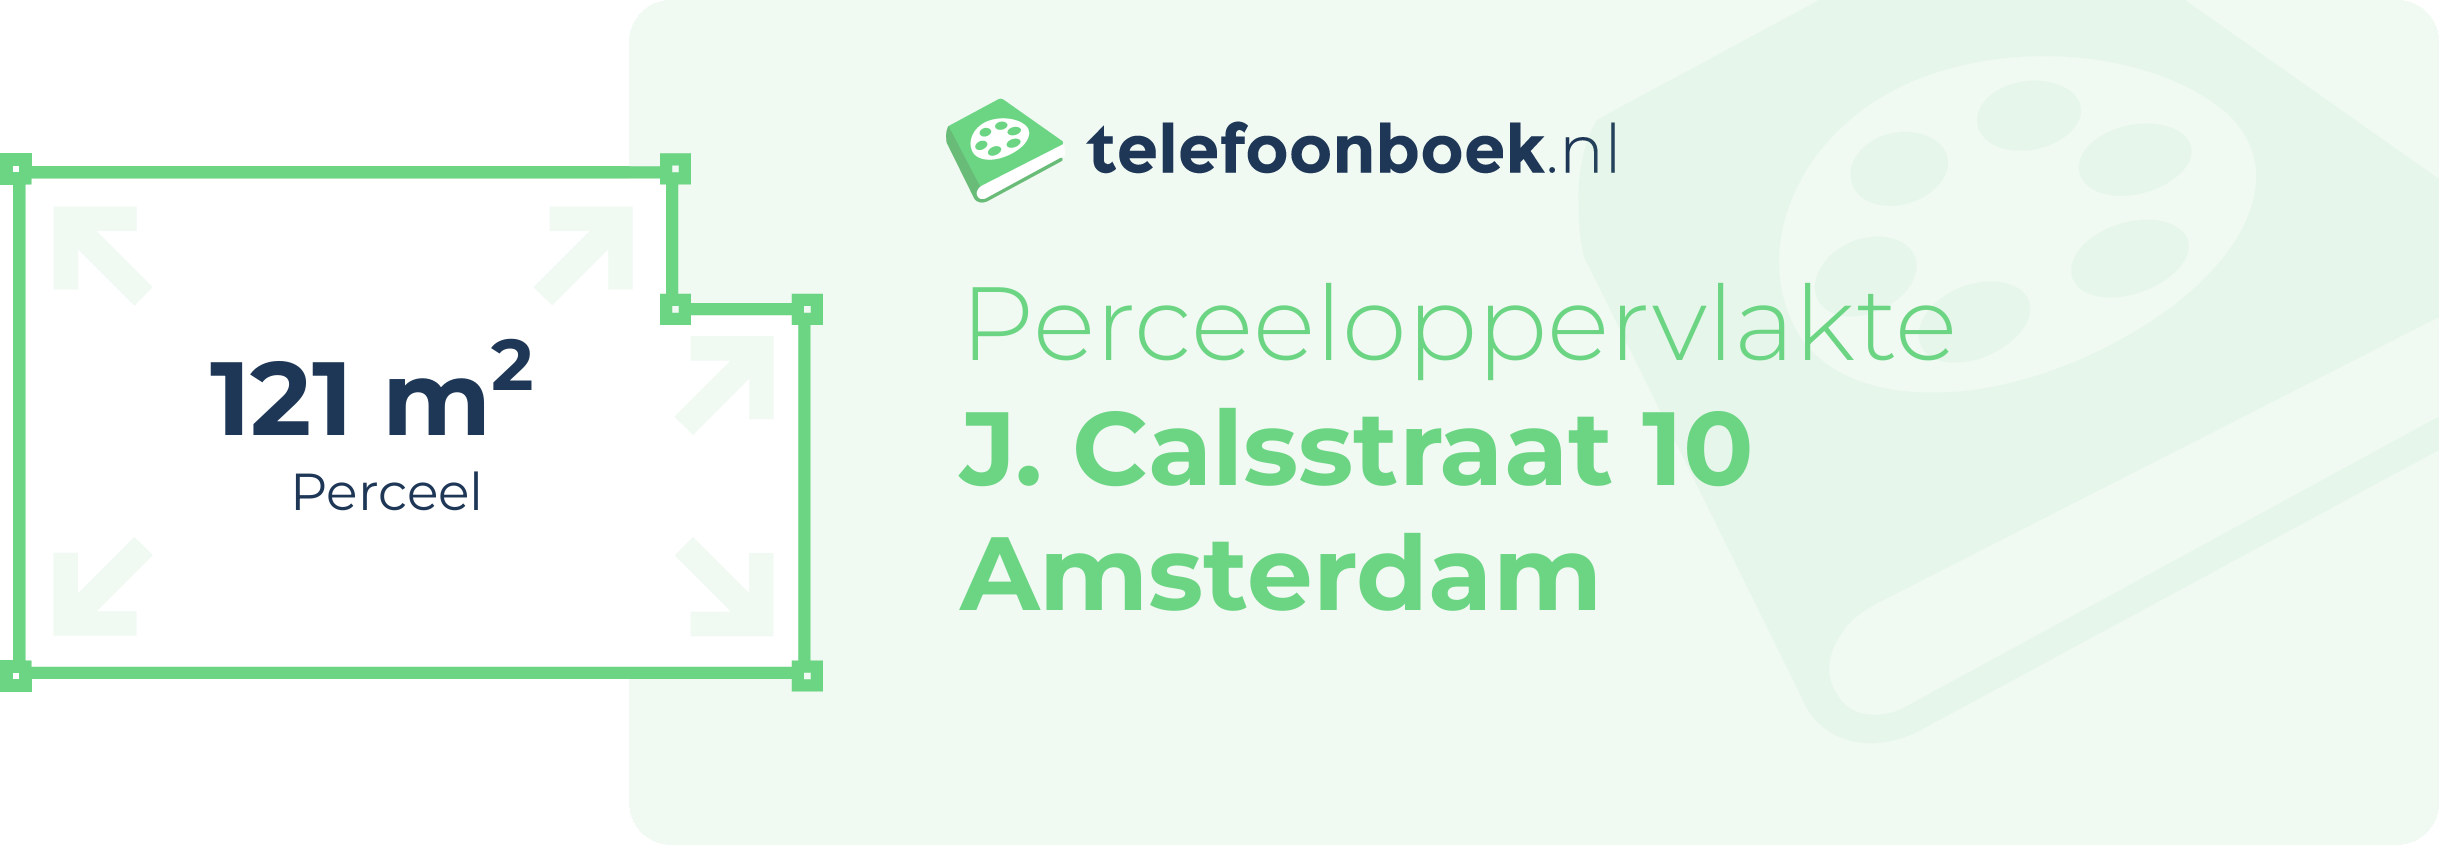 Perceeloppervlakte J. Calsstraat 10 Amsterdam